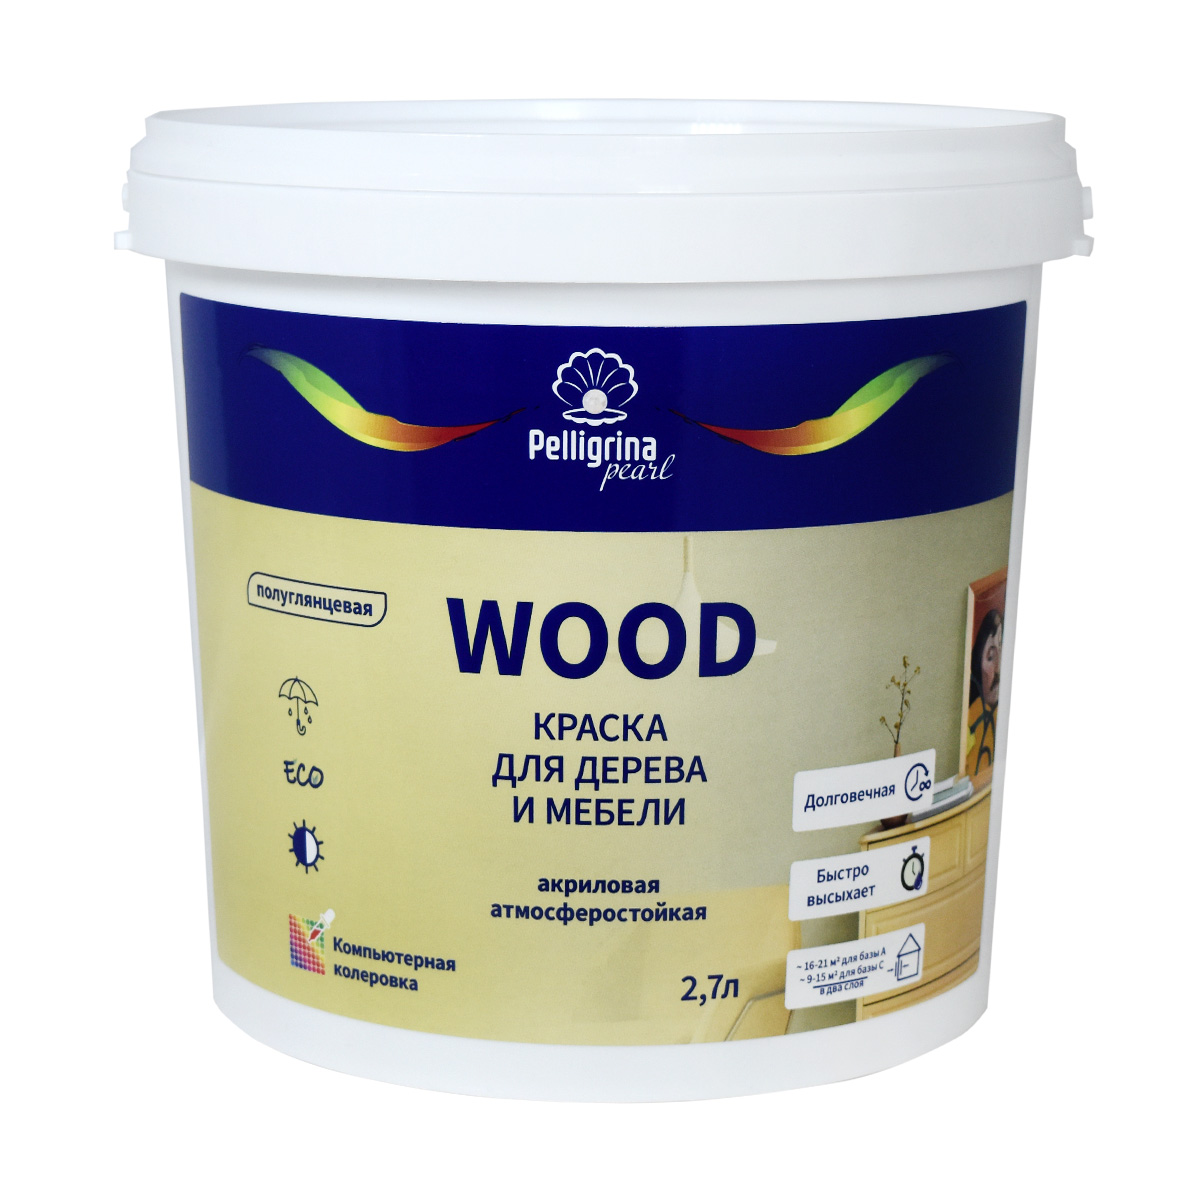 Краска для дерева и мебели Pelligrina Pearl Wood, акриловая, база С, бесцветная, 2,7 л усиленная смывка для краски с дерева telakka wood pro 13 кг